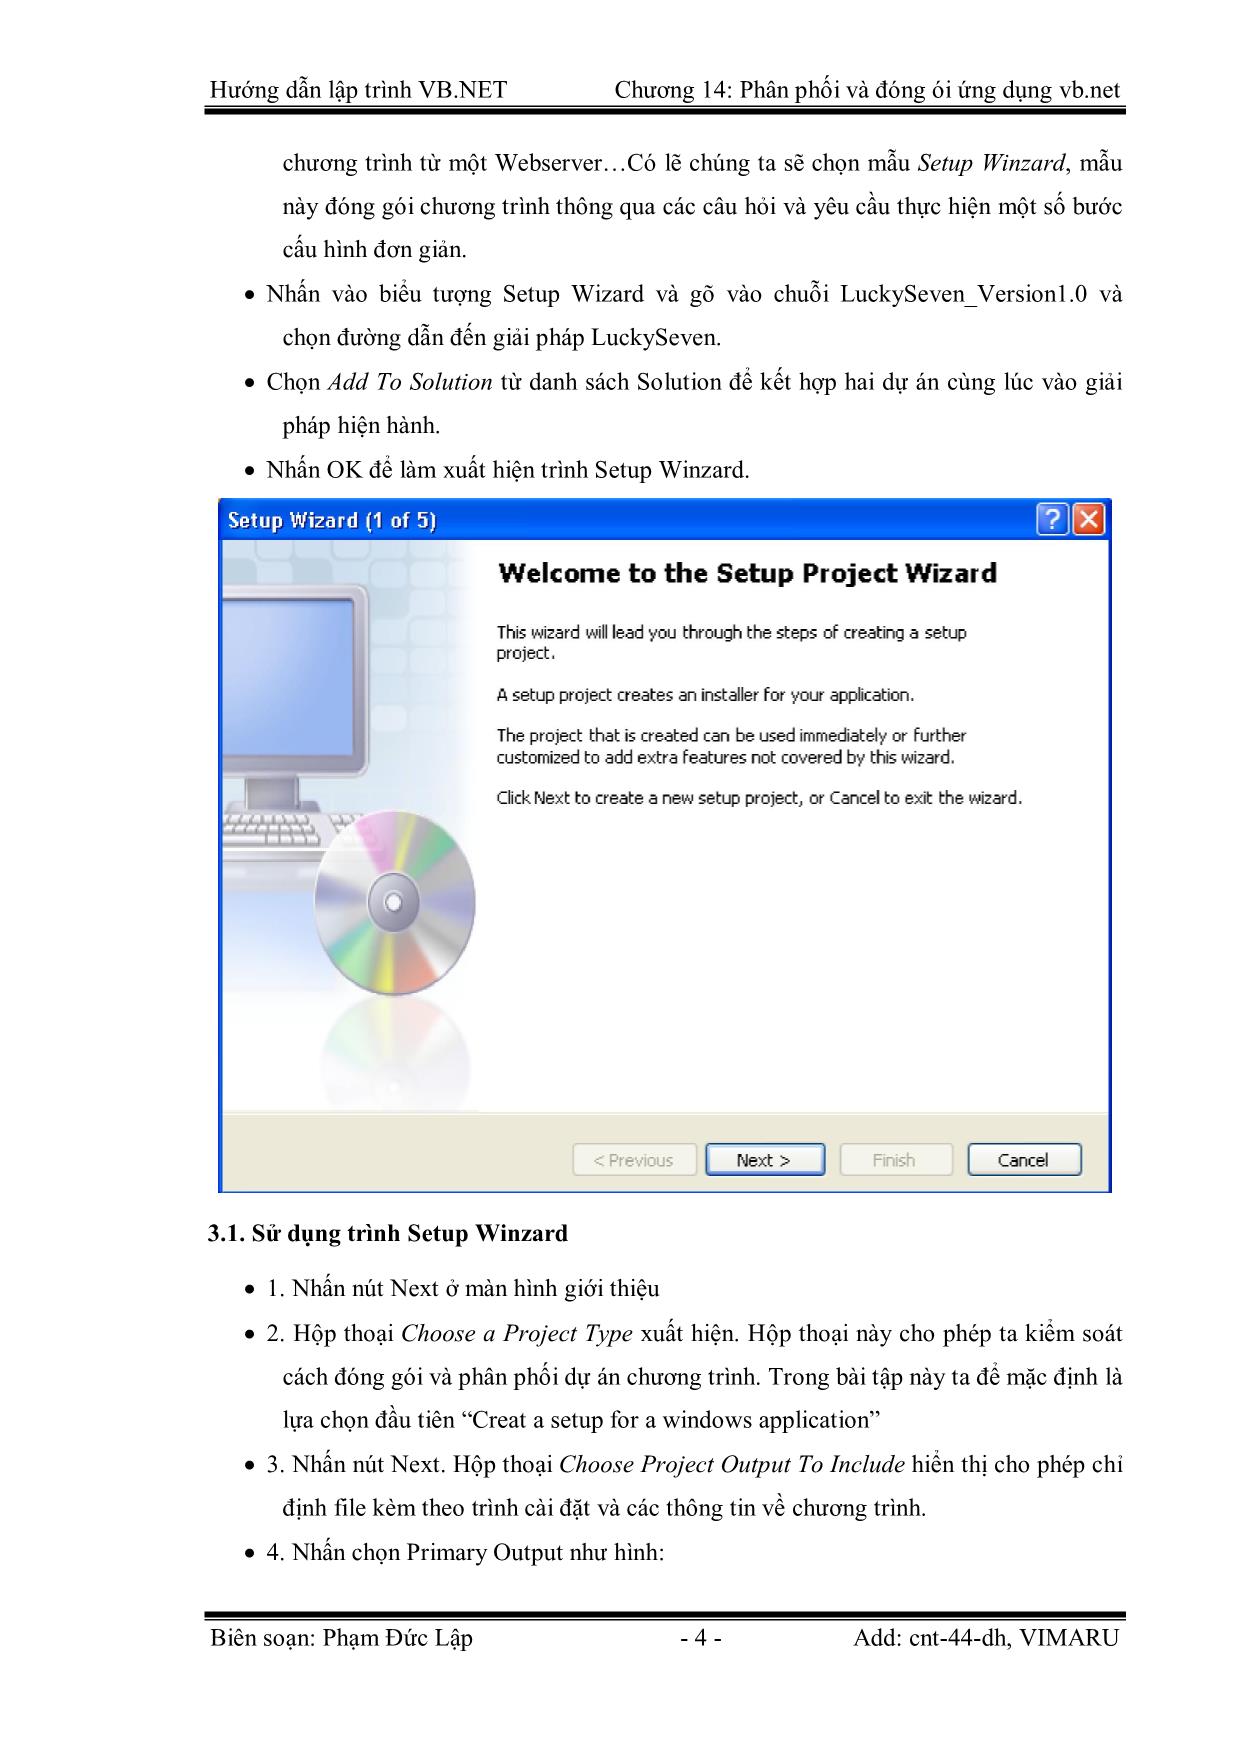 Giáo trình Hướng dẫn lập trình VB.NET - Chương 14: Phân phối và đóng gói ứng dụng Visual Basic.Net - Phạm Đức Lập trang 4